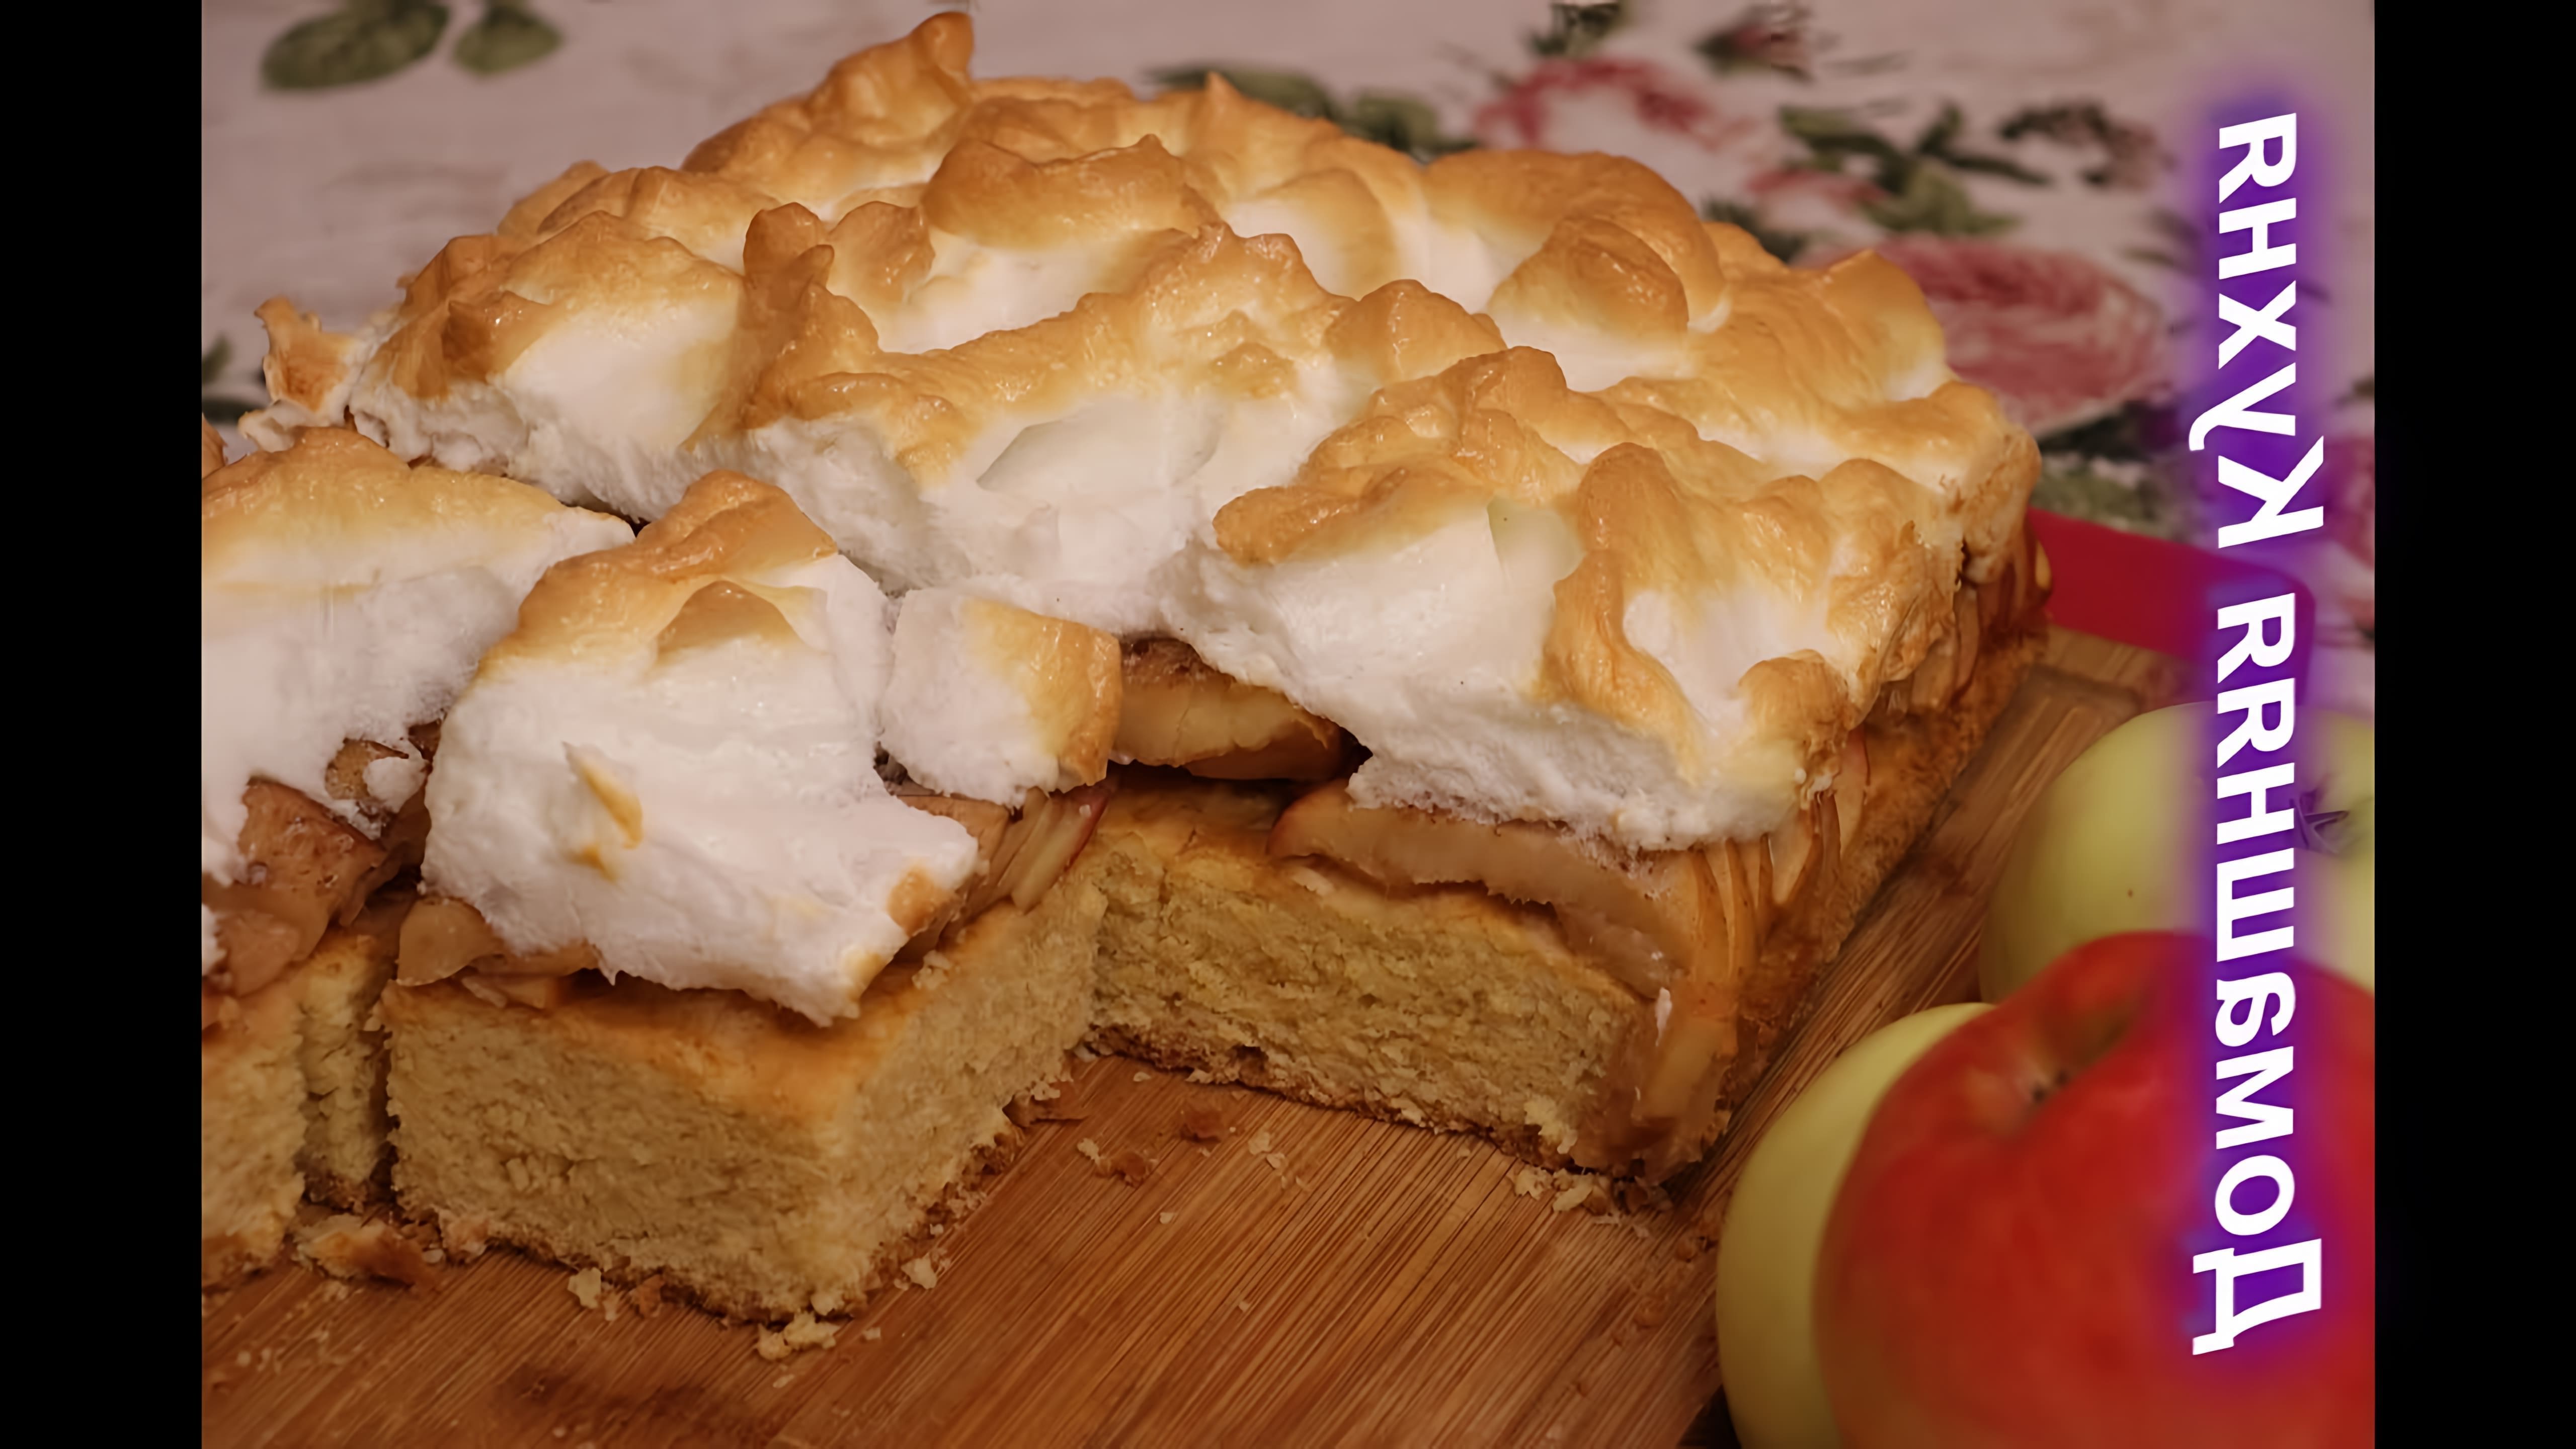 В этом видео демонстрируется рецепт яблочного пирога, который готовится в духовке